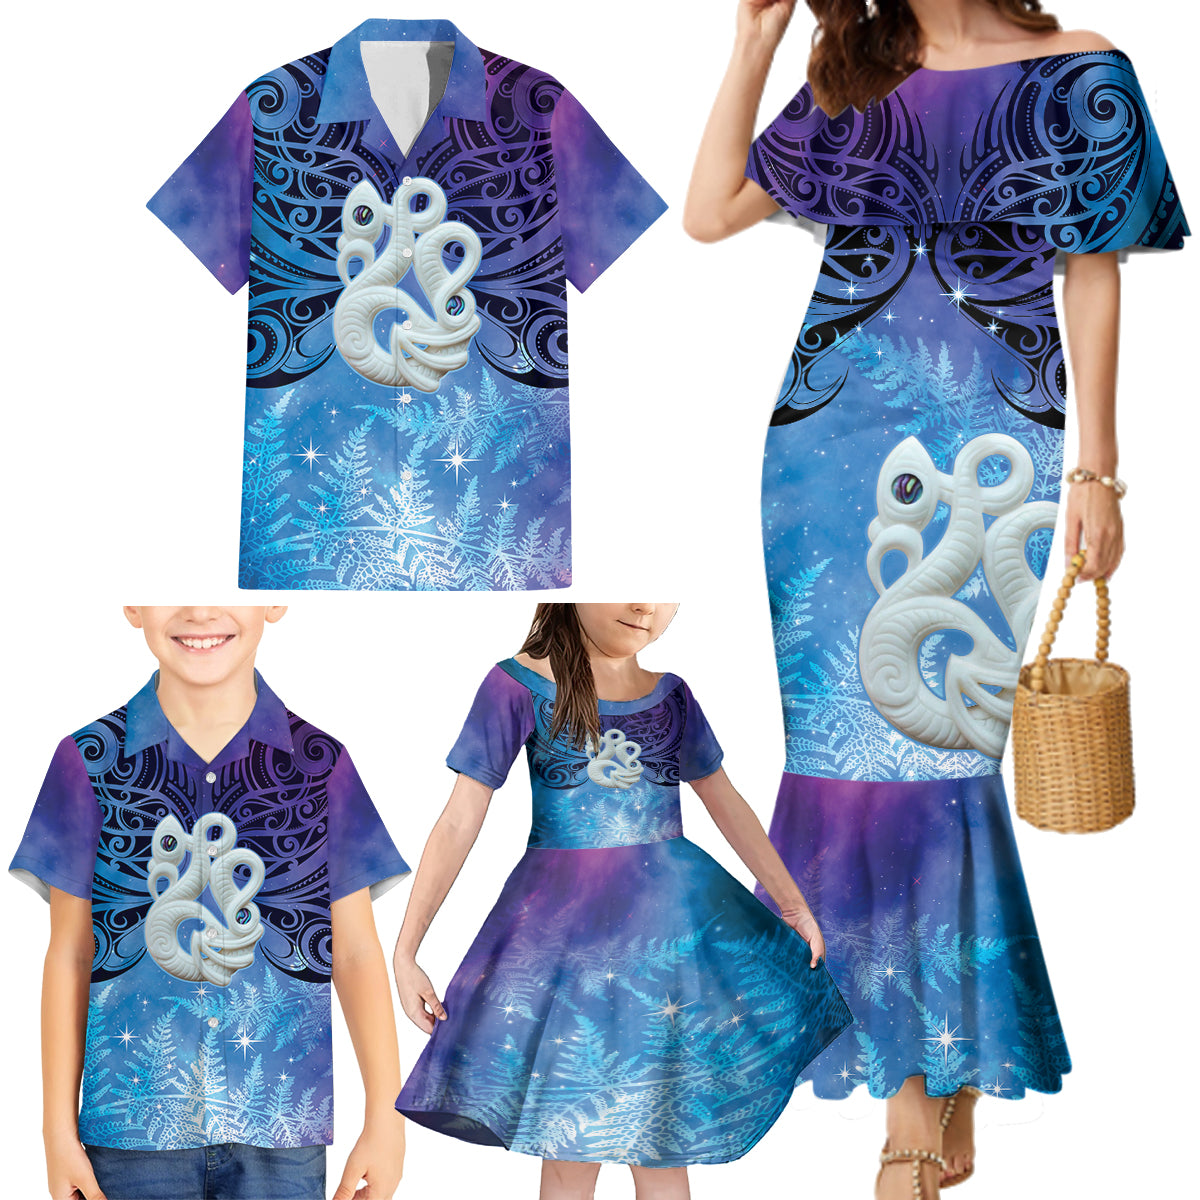 New Zealand Matariki Family Matching Mermaid Dress and Hawaiian Shirt Aotearoa Maori New Year Manaia Galaxy Vibes